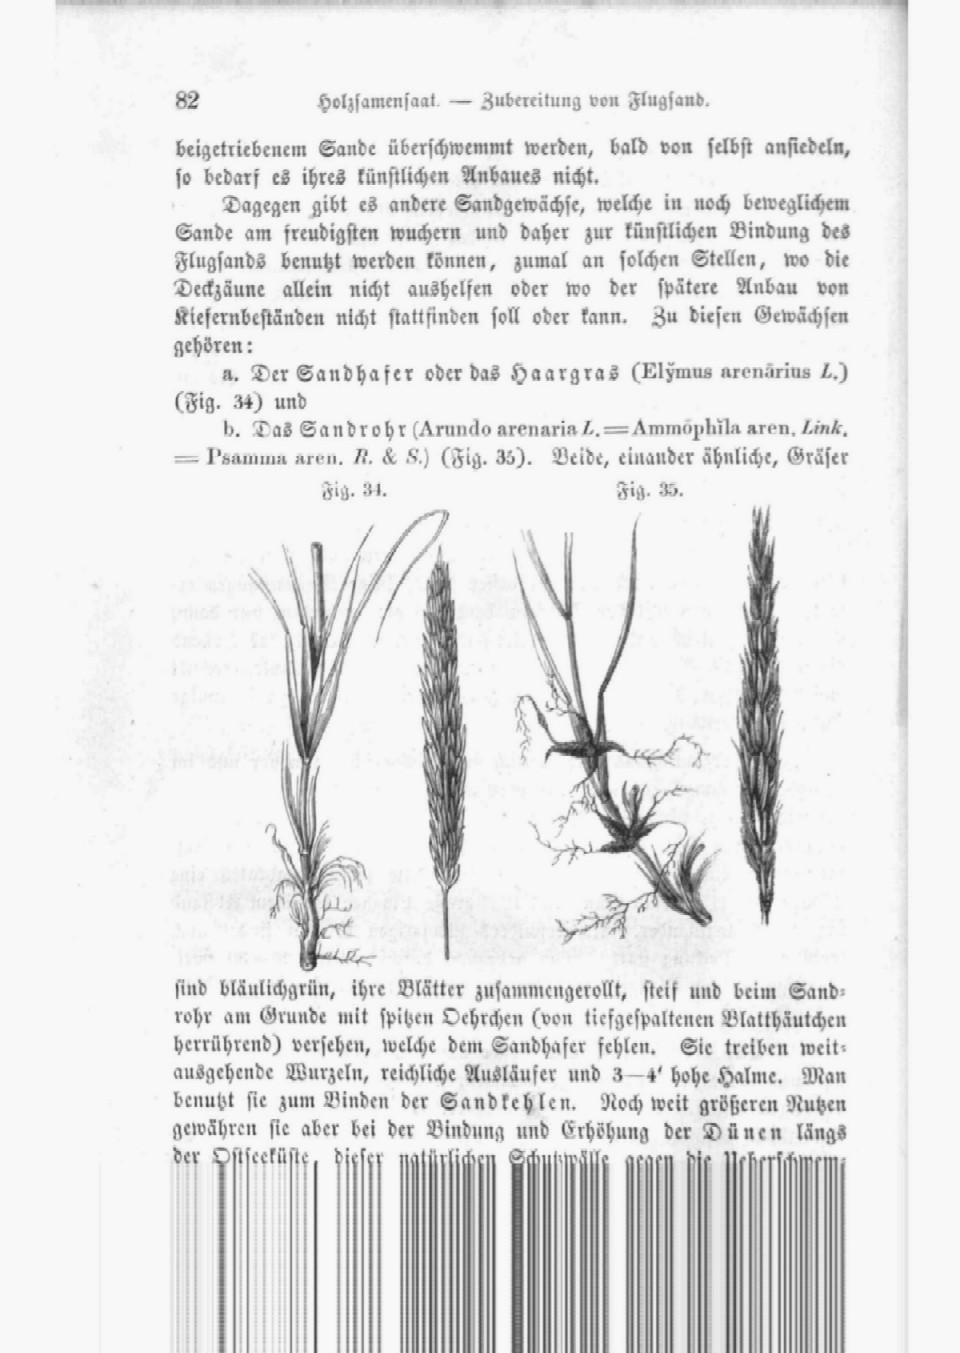 Heyer C. (1864): Der Waldbau